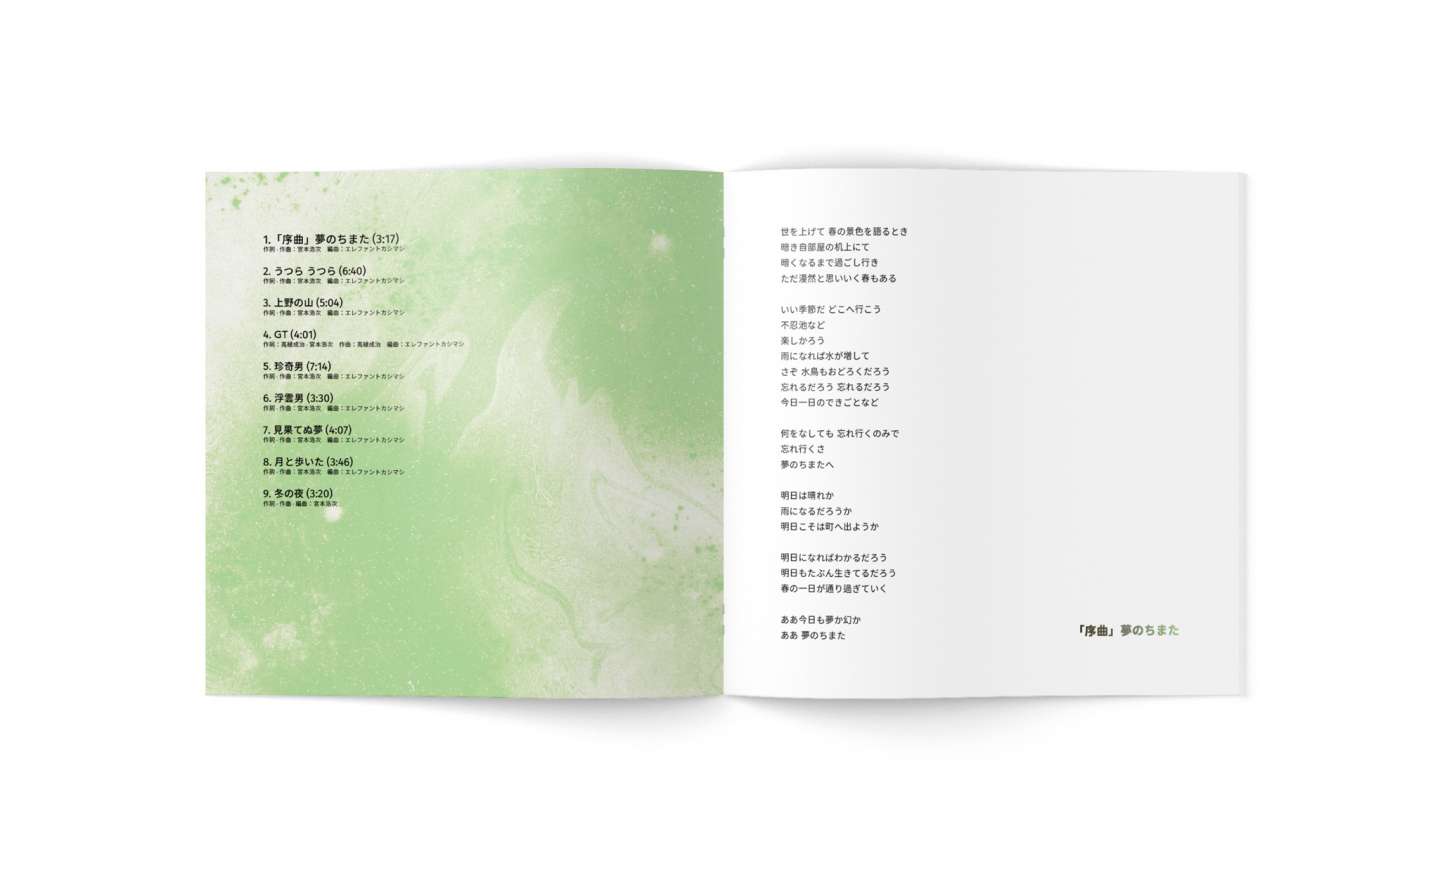 ALBUM DESIGN FOR ELEPHANT KASHIMASHI'S "UKIYO NO YUME"